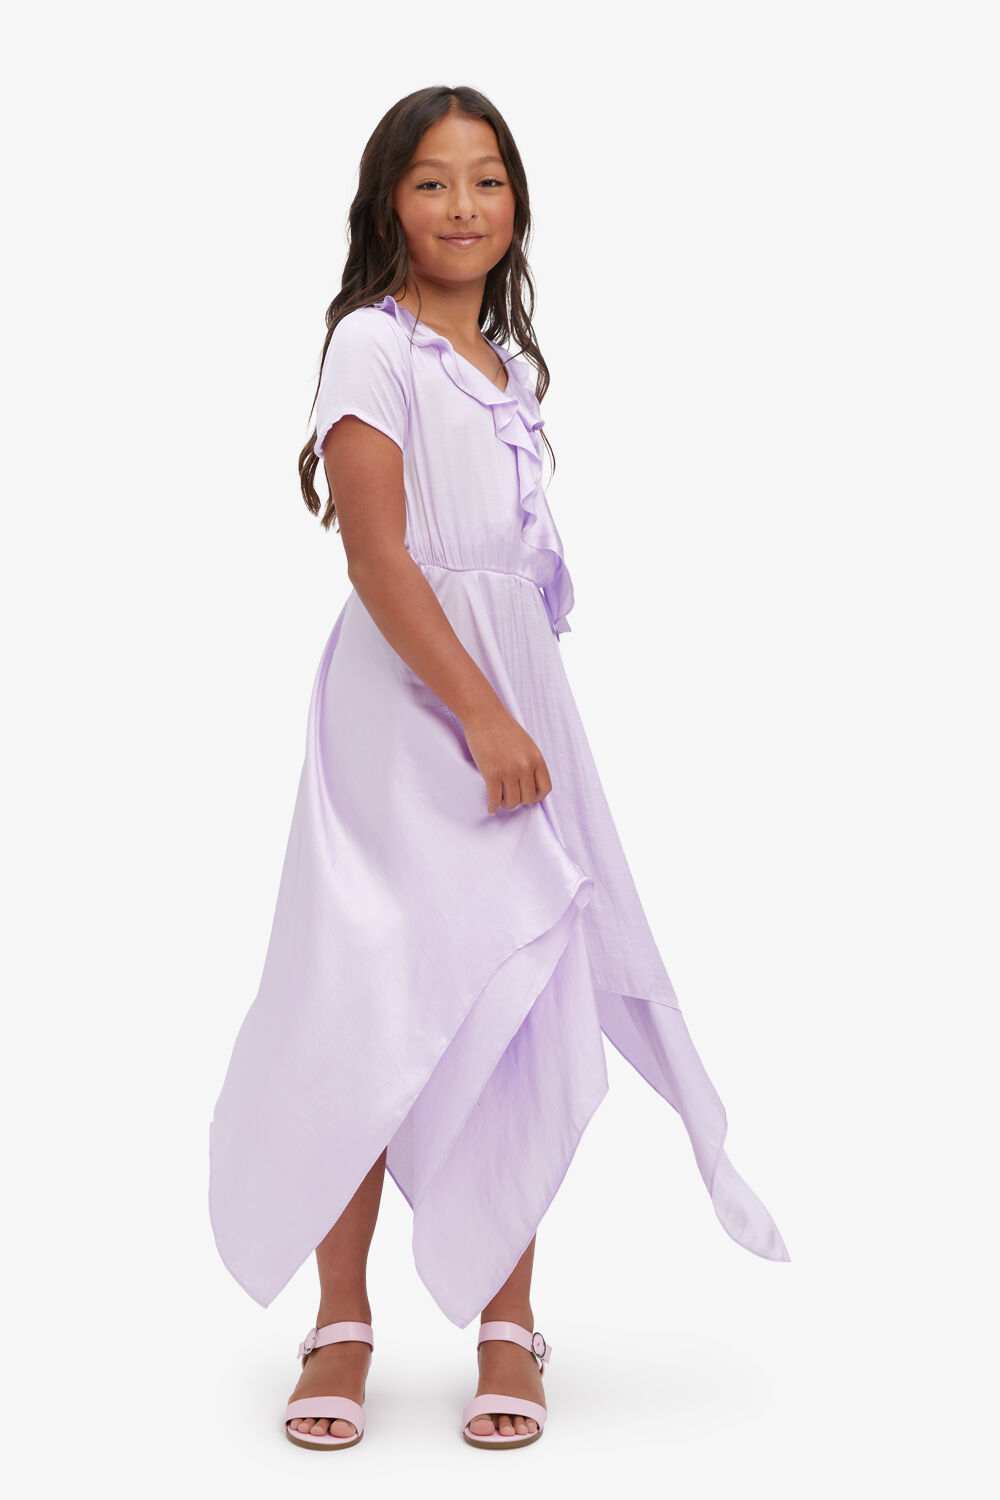 GIRLS CARTER HANKY DRESS in colour LILAC CHIFFON